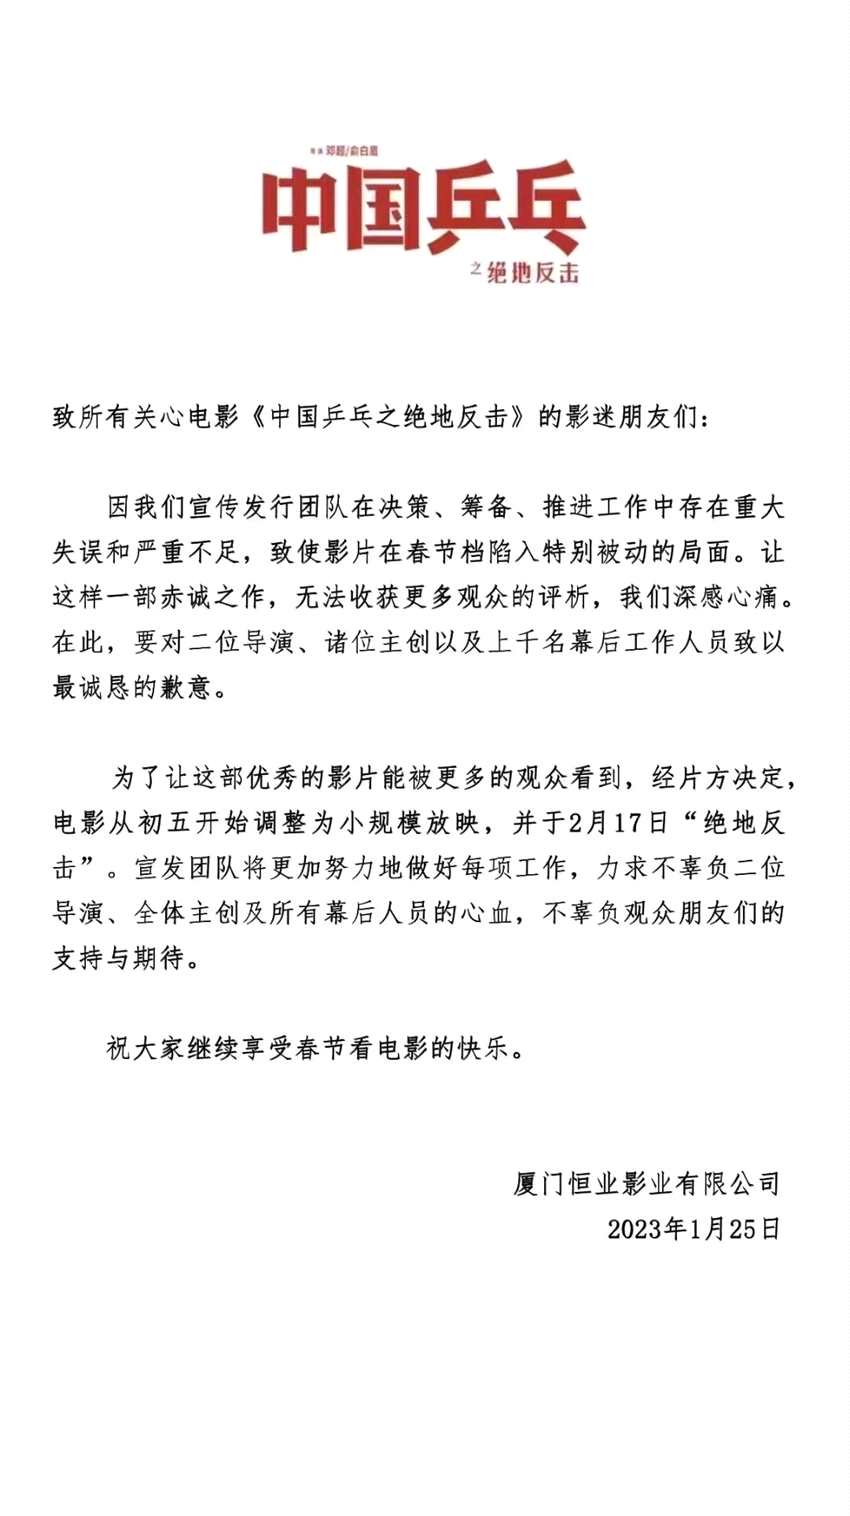 《中国乒乓之绝地反击》改档2月17日放映